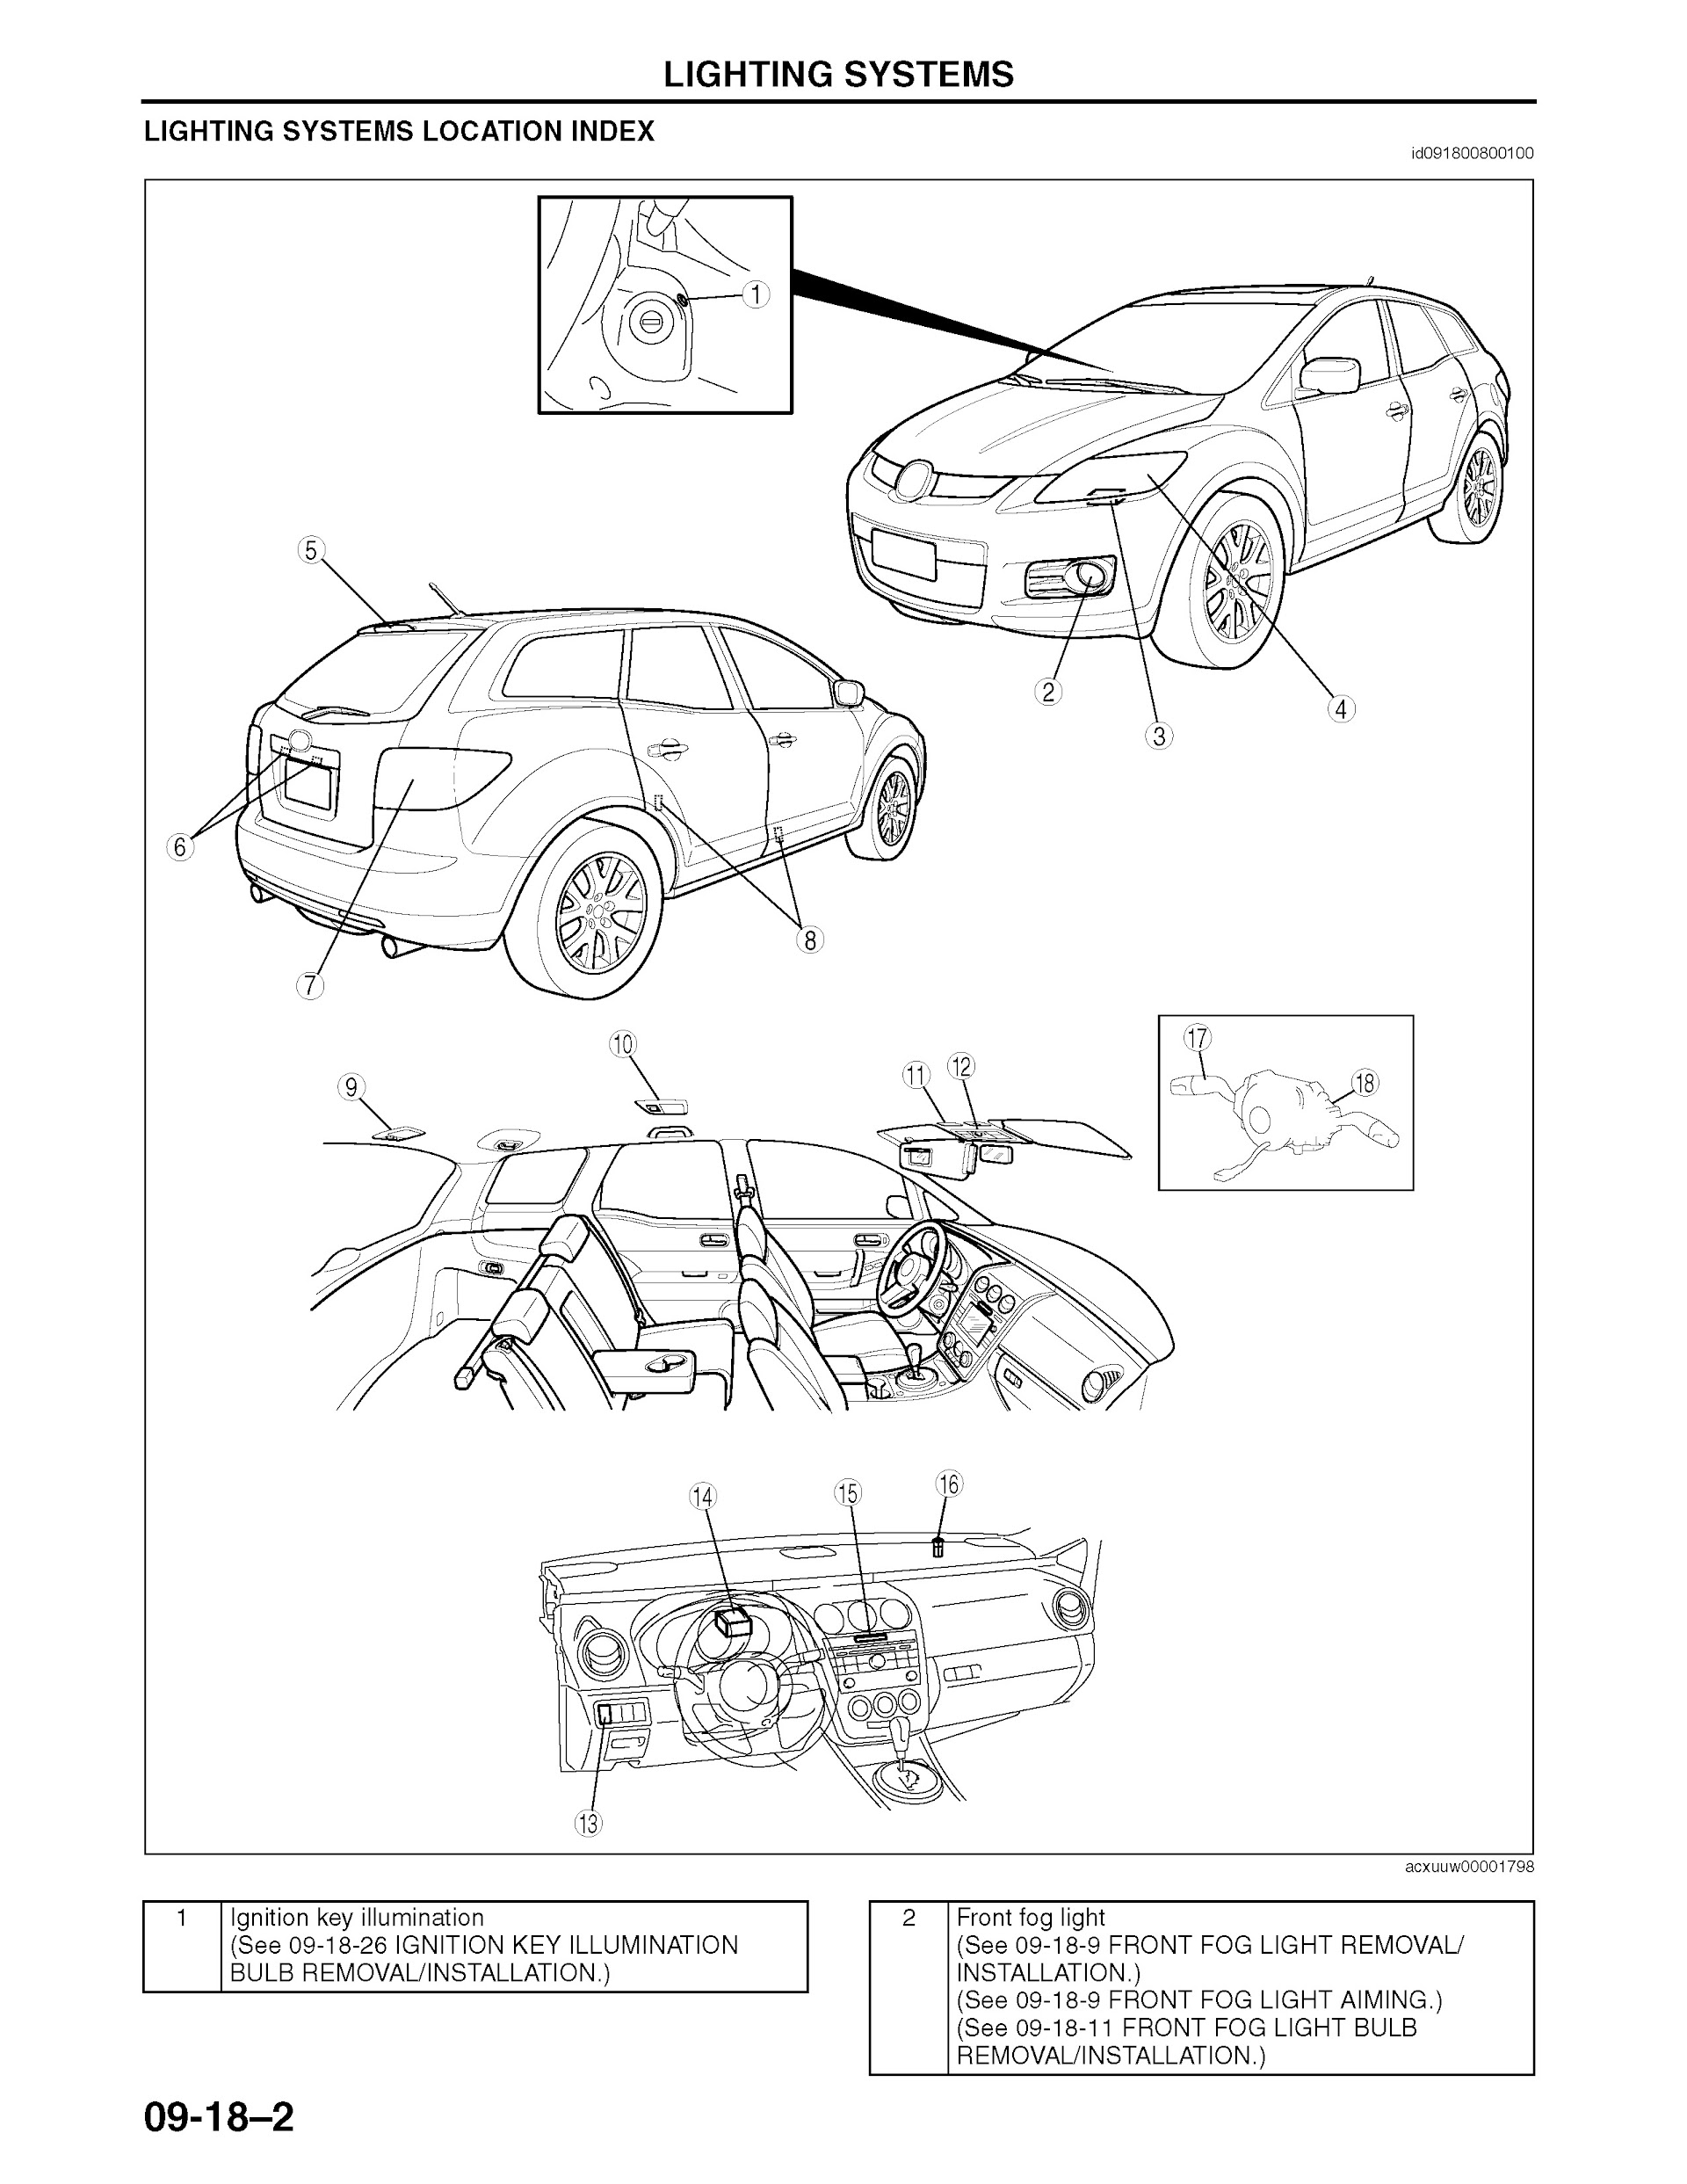 2007 Mazda CX-7 Repair Manual, Lighting System